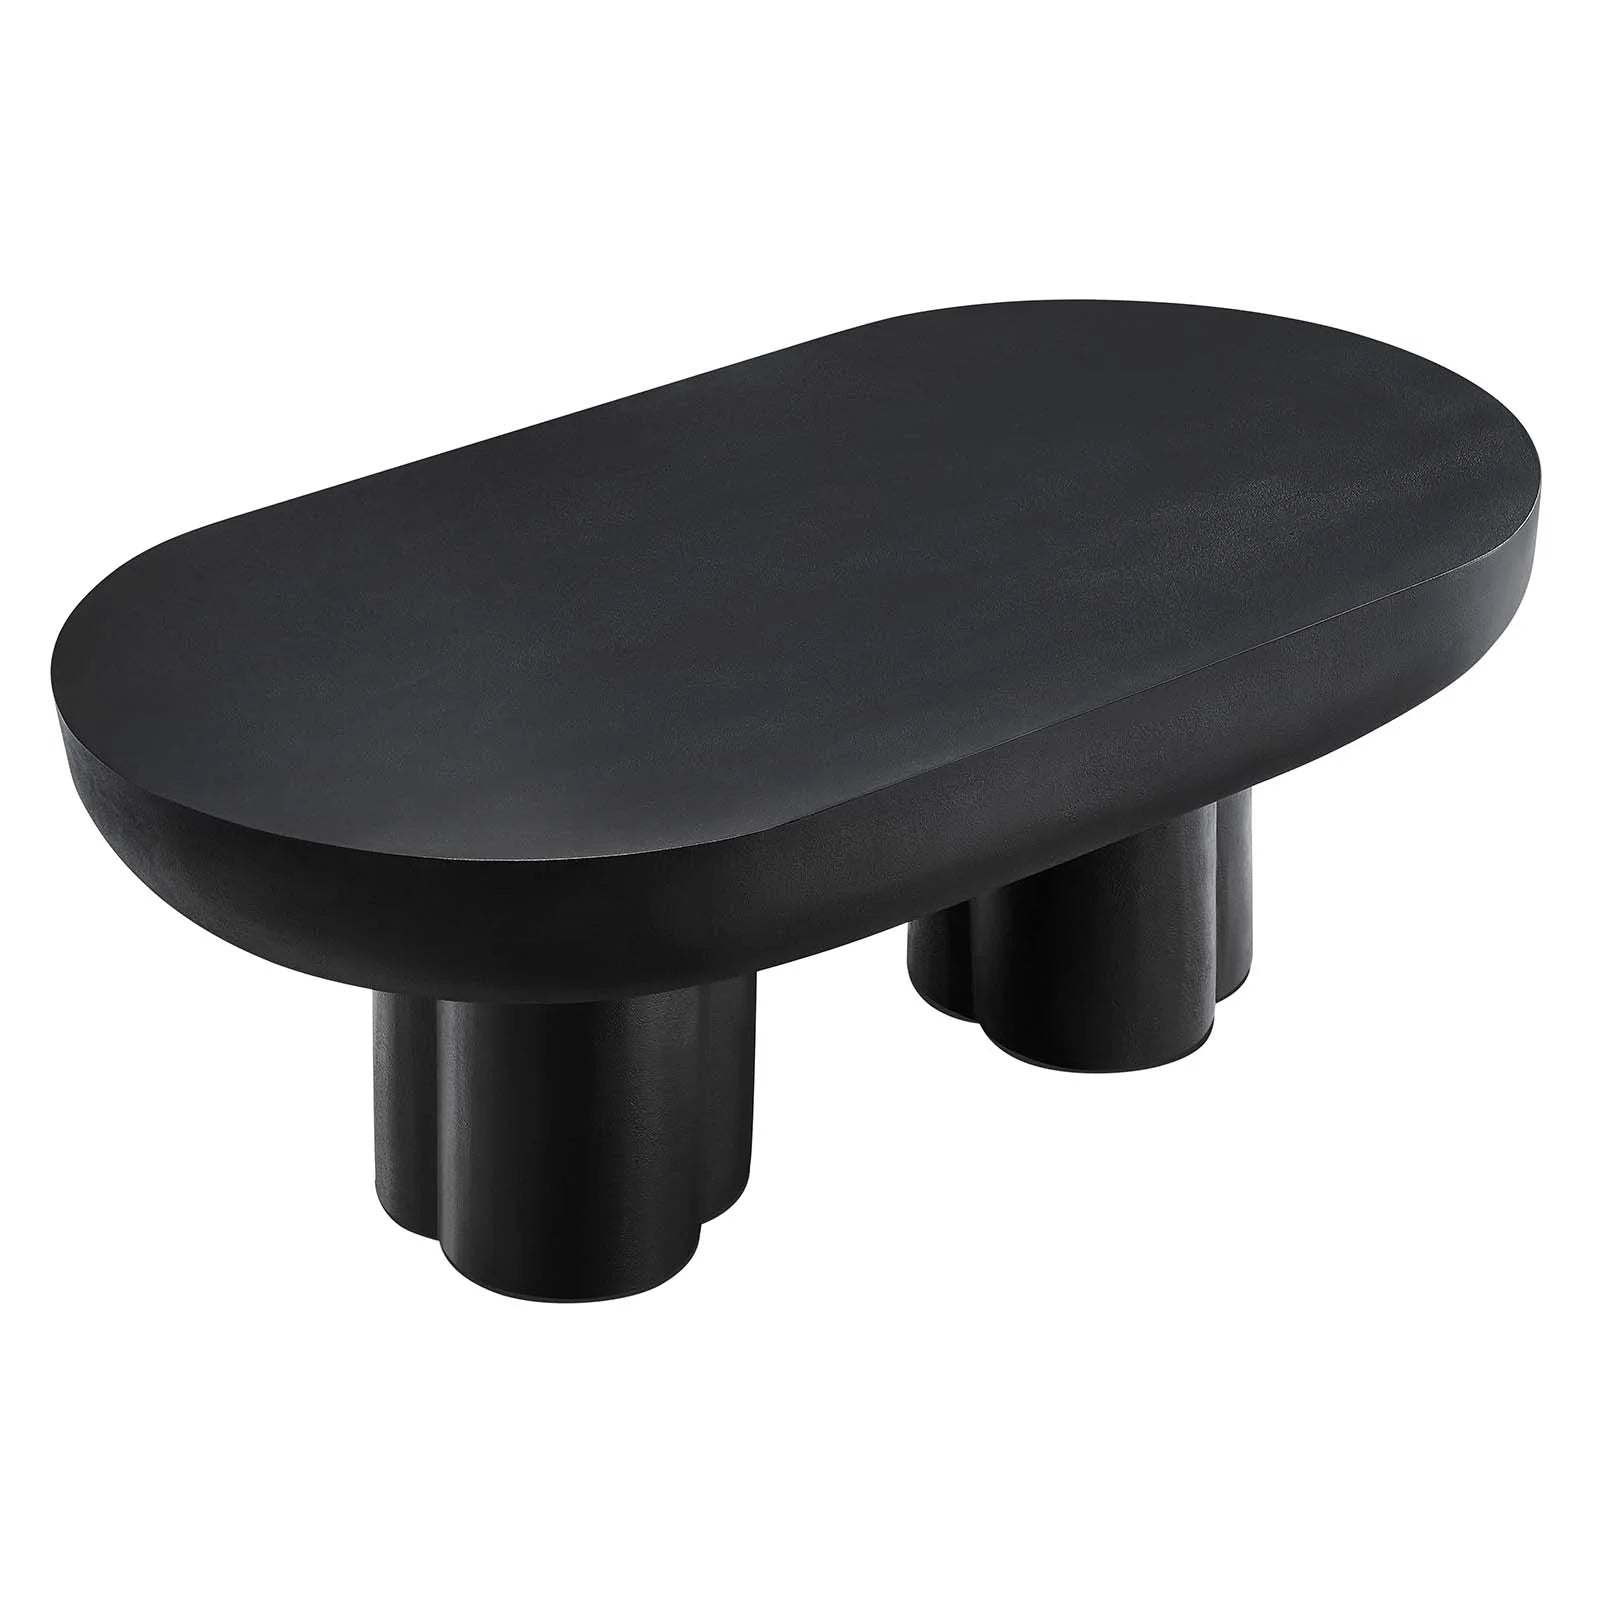 Casper Oval Concrete Coffee Table - Black